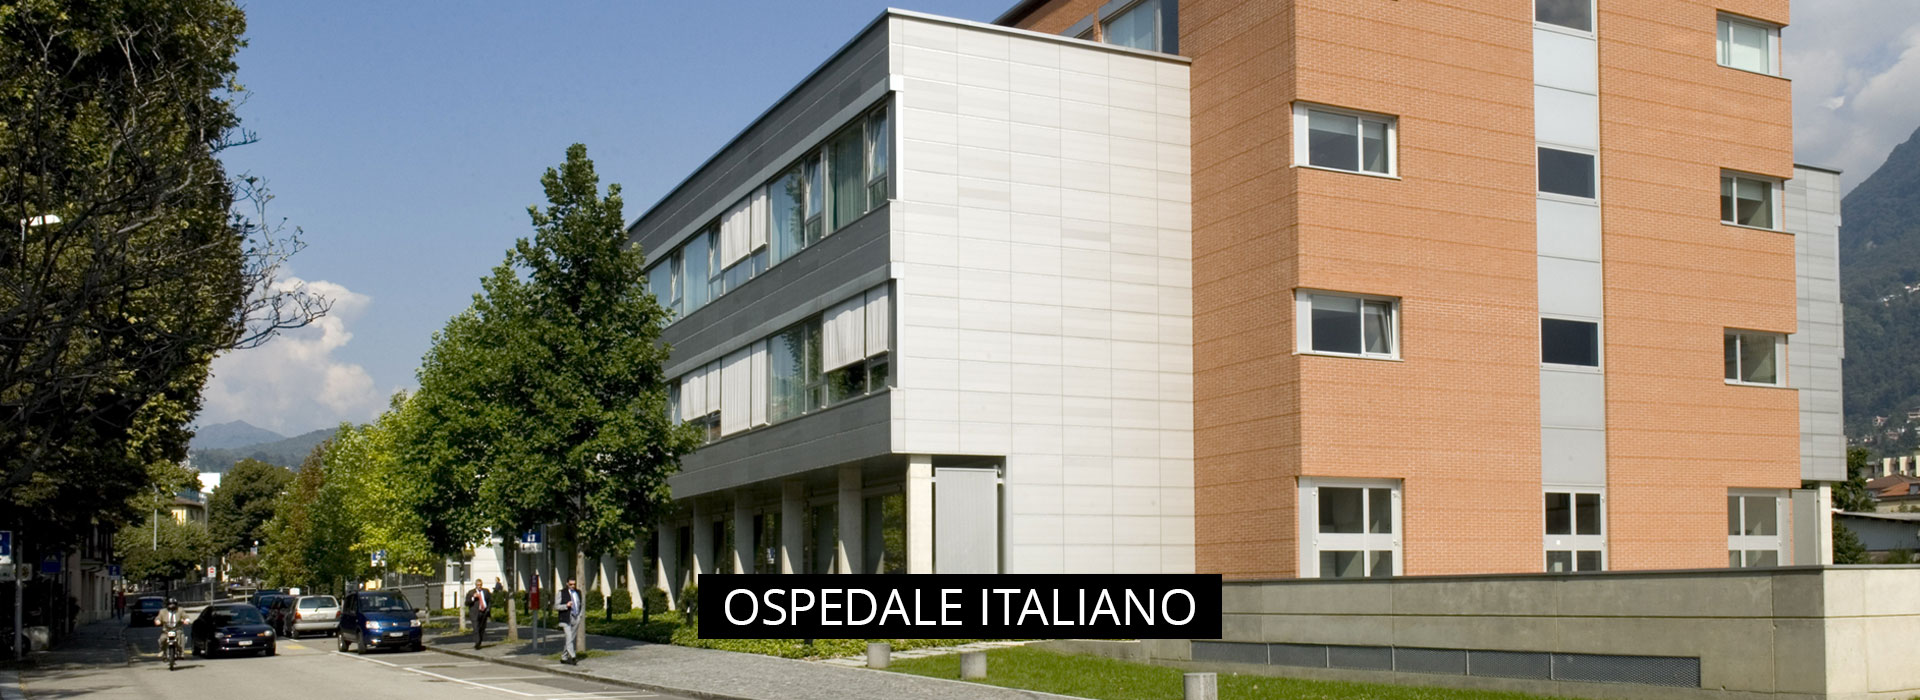 OSPEDALE-ITALIANO